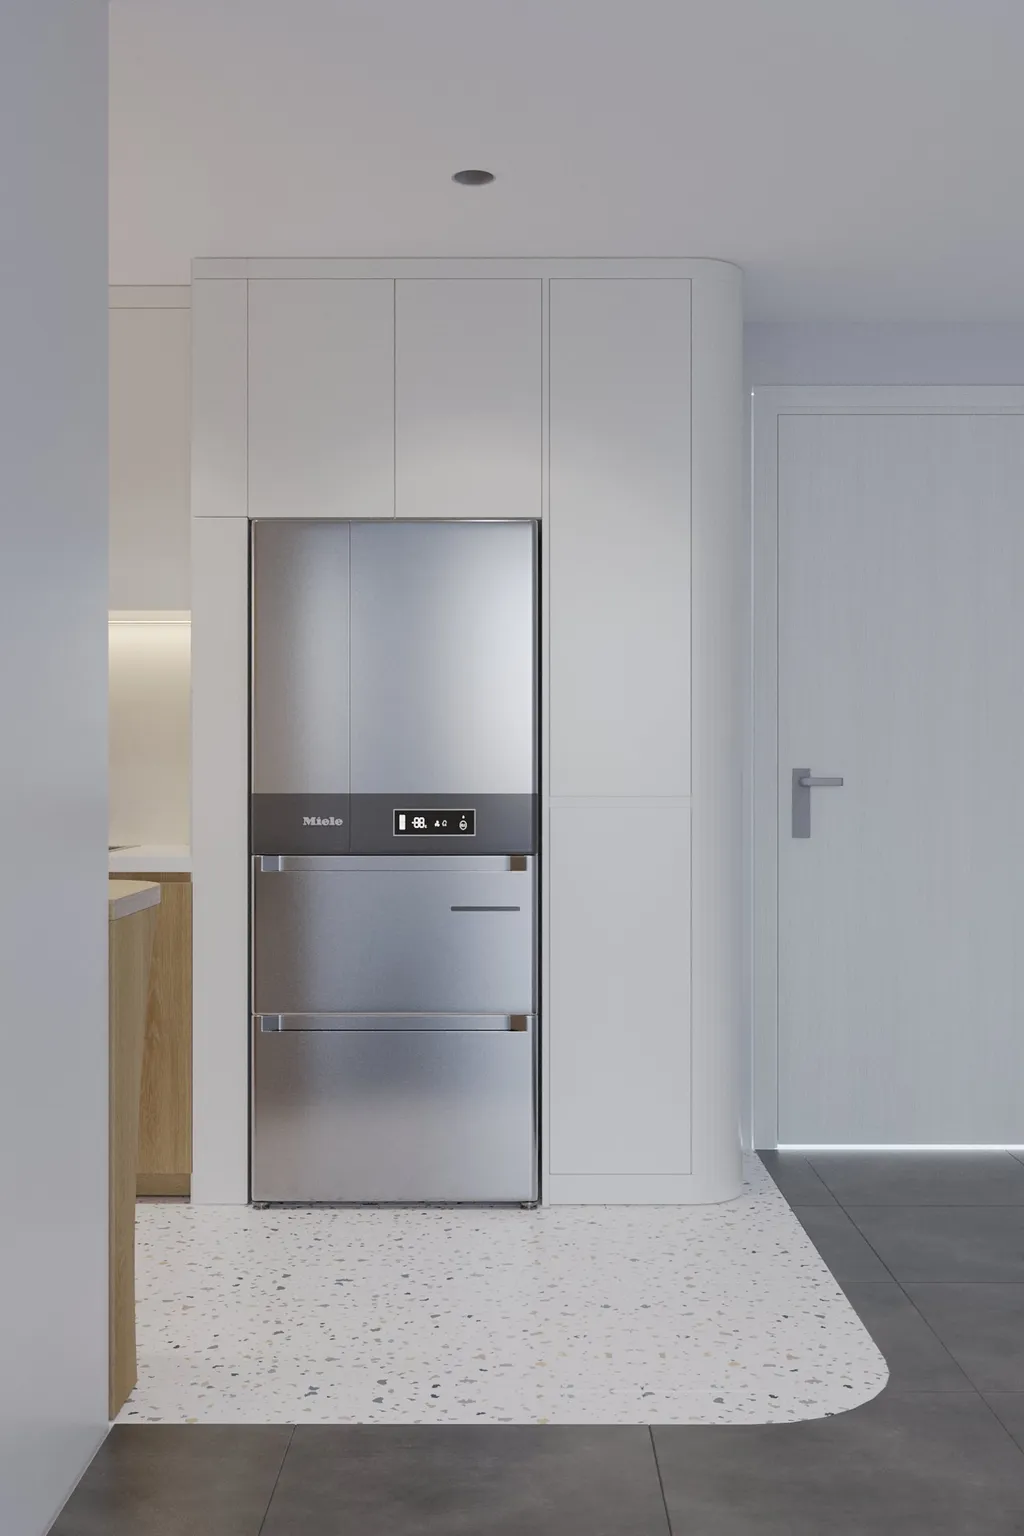 Thiết kế nội thất 3D cho phòng bếp Căn hộ Quận 8 theo phong cách Modern